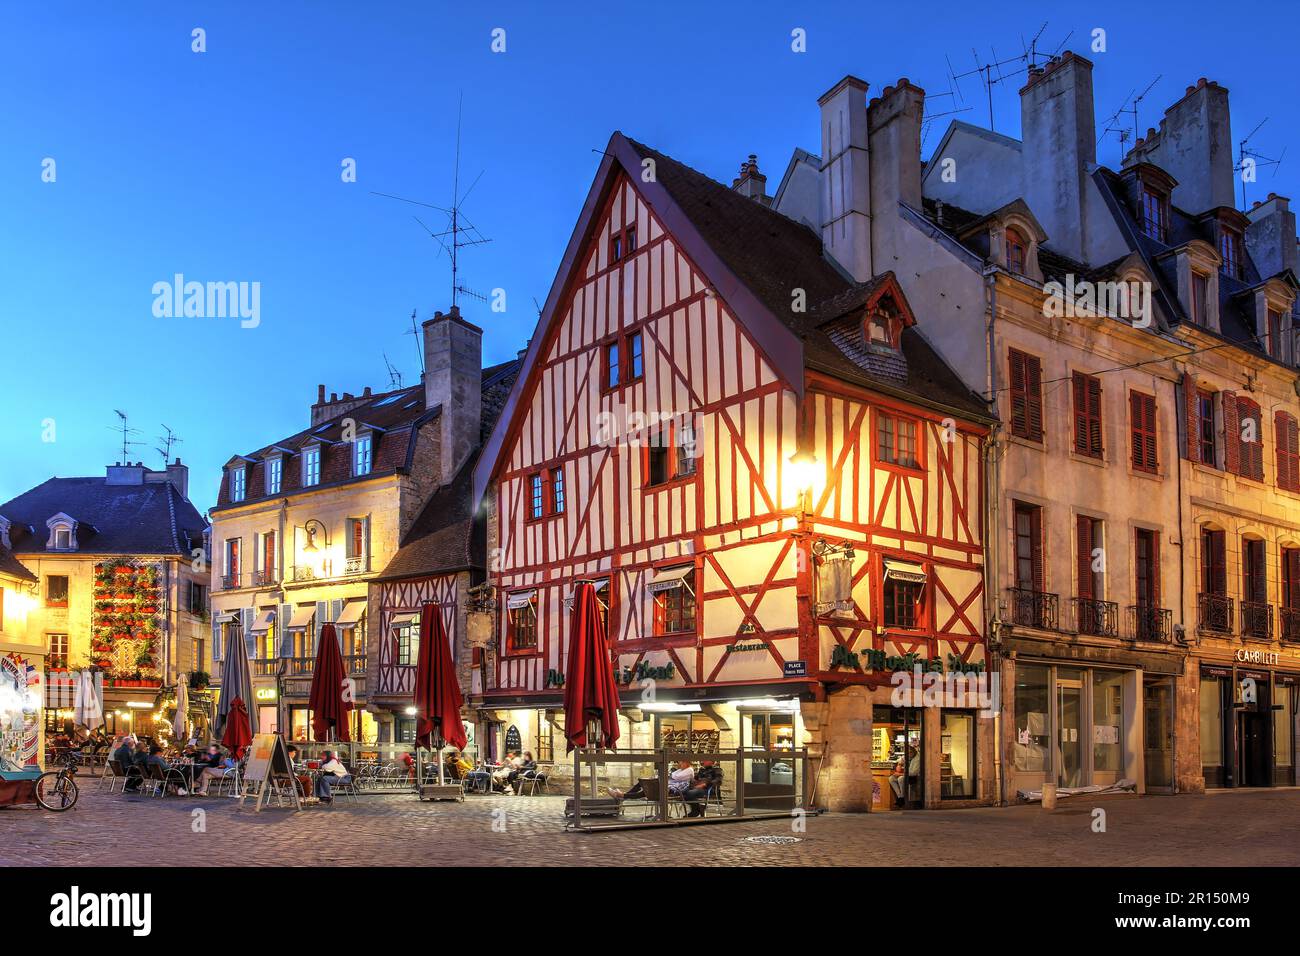 Notte in Place Francois Rude (o Place du Bareuzai) nel centro storico di Digione, Francia. Foto Stock